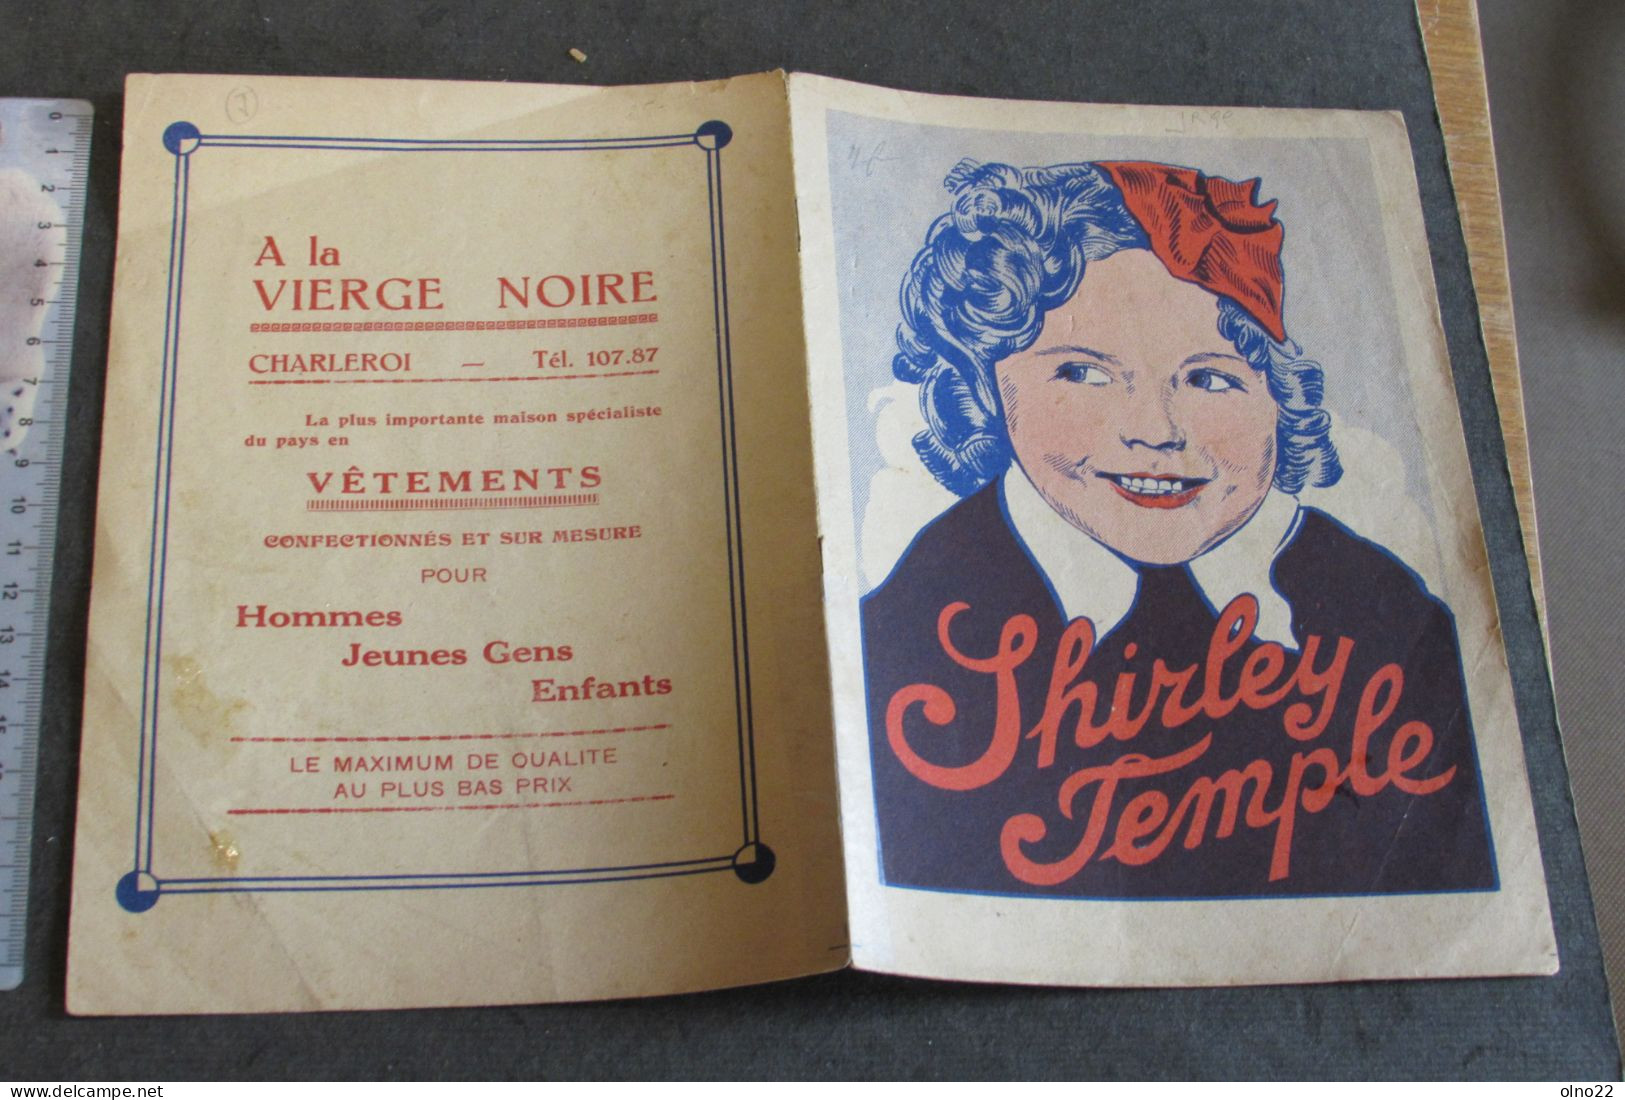 SHIRLEY TEMPLE - LIVRET PUBLICITAIRE VETEMENT A LA VIERGE NOIRE CHARLEROI -  4 FEUILLETS - VOIR SCANS - Advertising